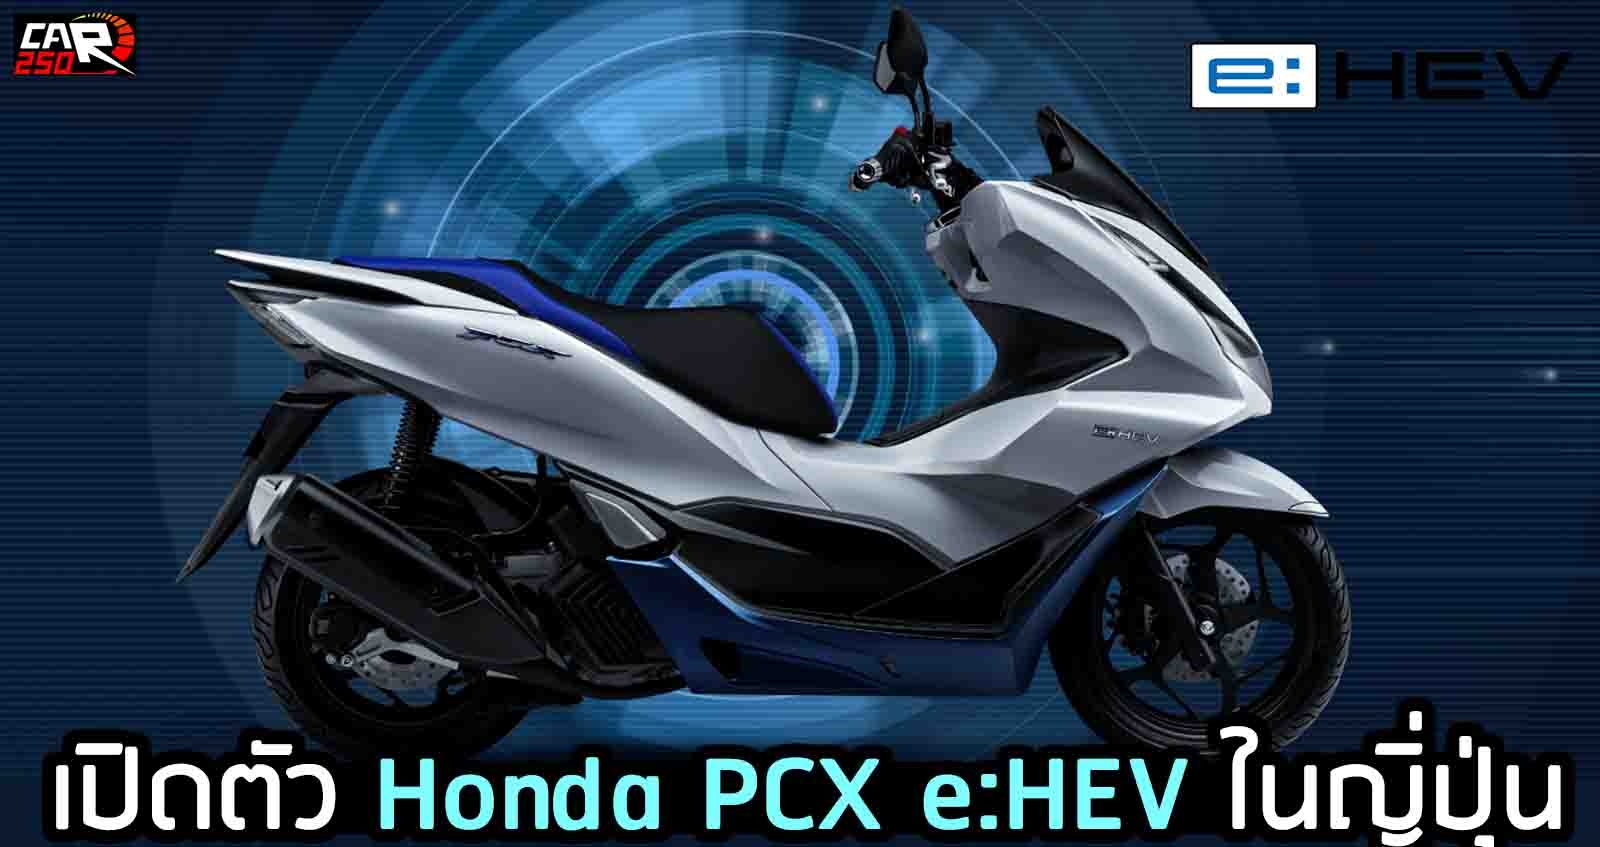 เปิดตัว Honda PCX e:HEV ในญิ่ปุ่น ประหยัด 55.4 กม./ลิตร